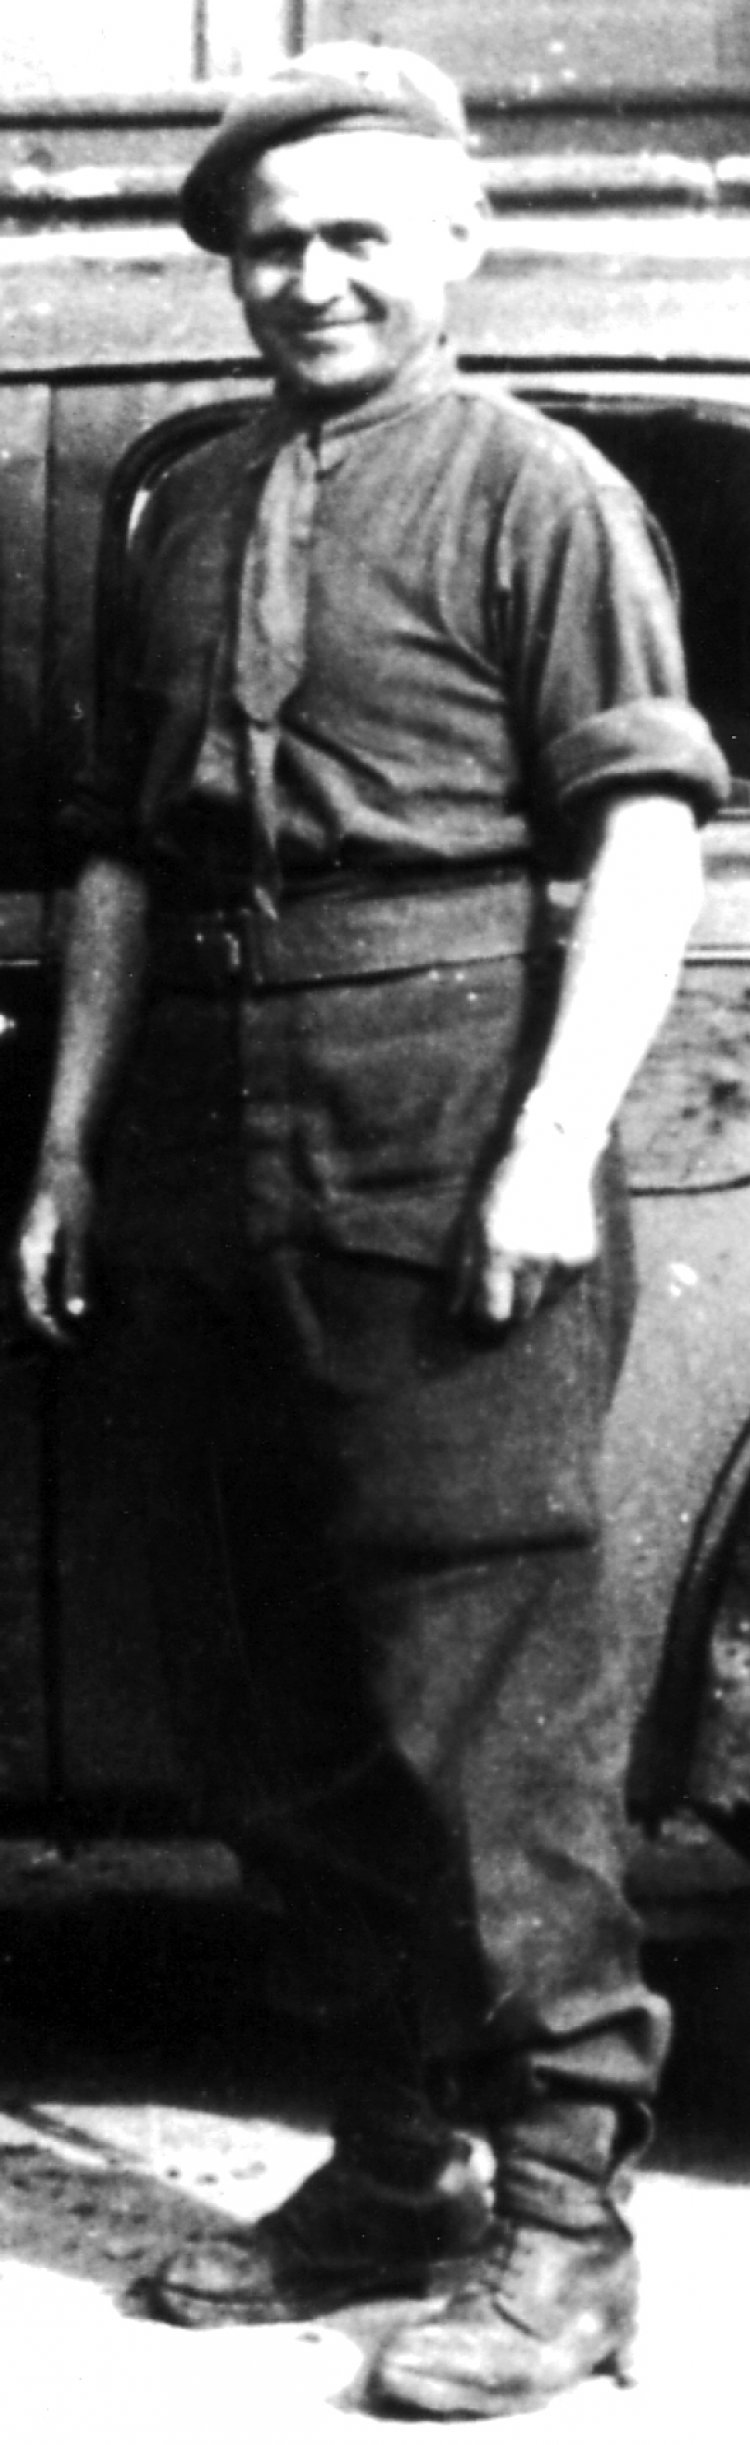 Gérard Raphaël Algoet kurz vor seiner Abreise aus dem befreiten KZ Buchenwald.
Fotograf unbekannt, April 1945
Privatbesitz